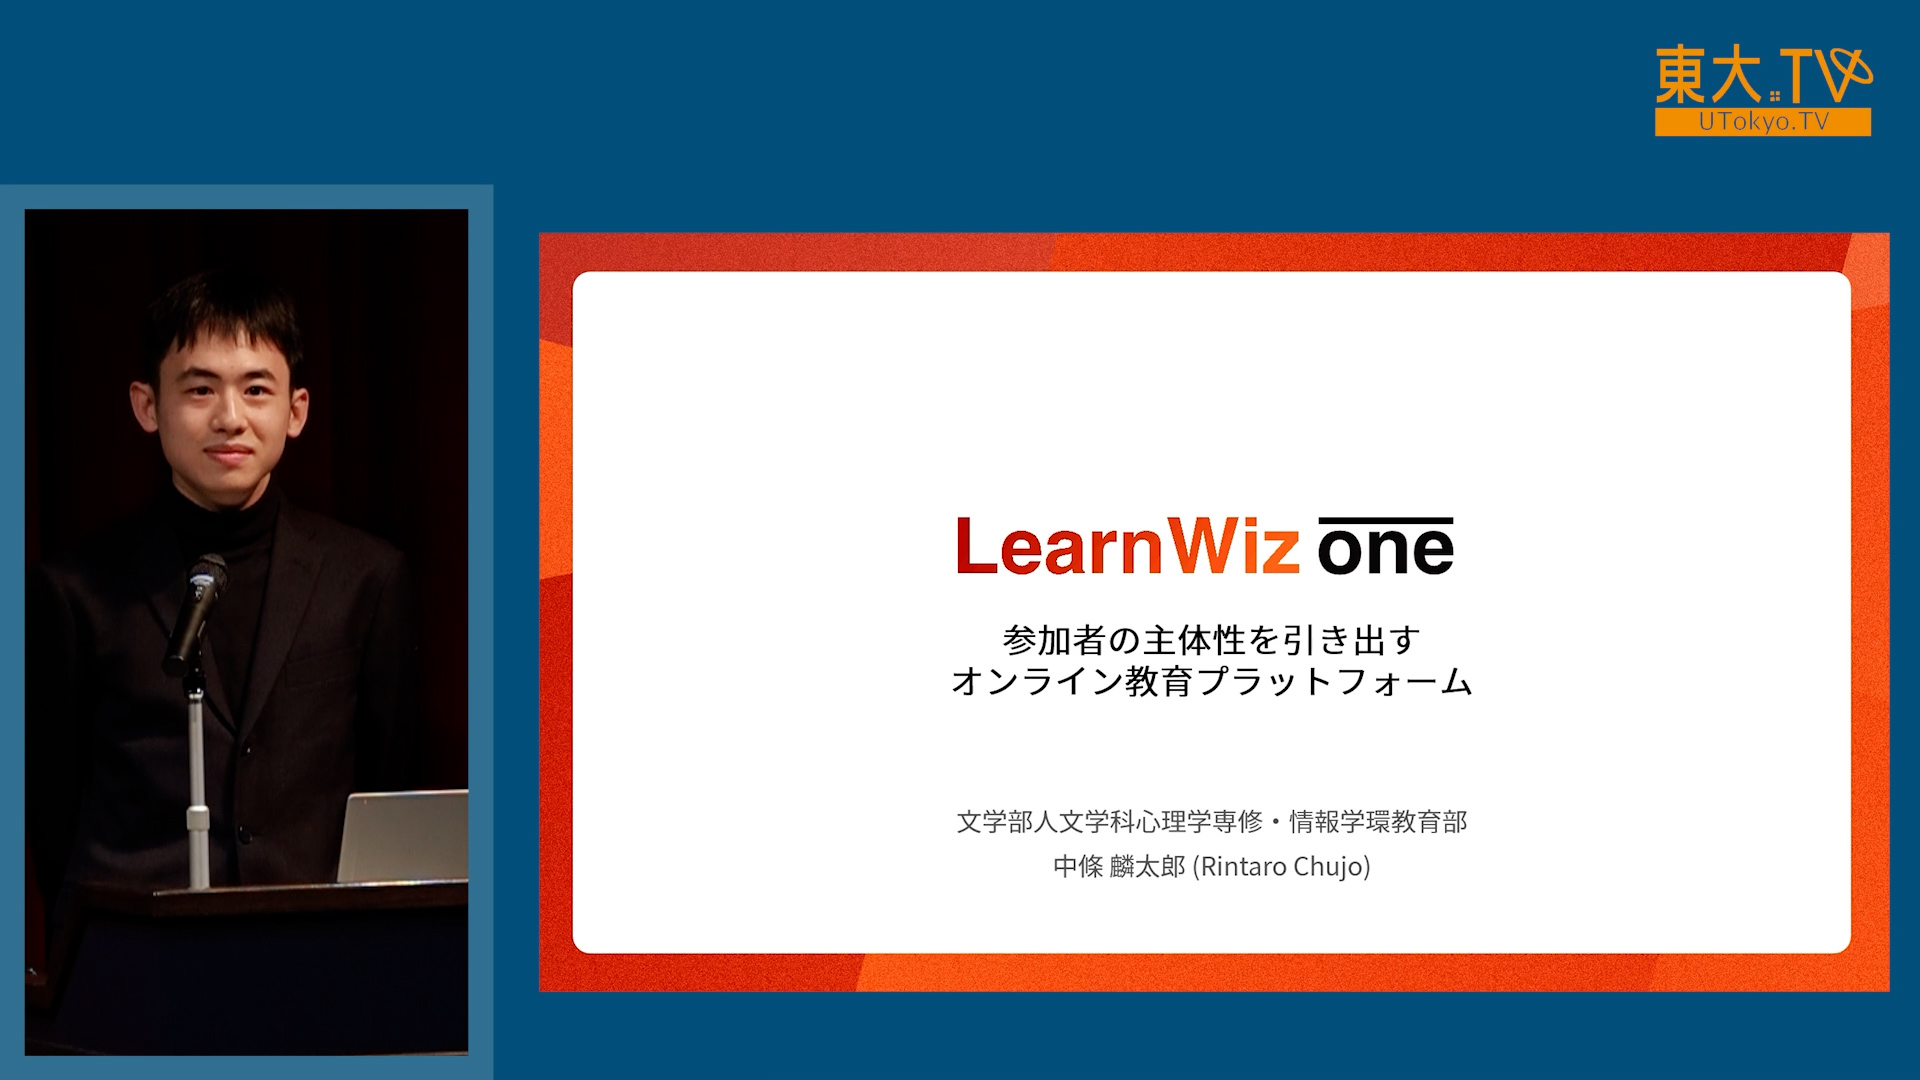 東京大学におけるオンライン教育支援の経験から生まれた教育プラットフォーム「LearnWizOne」の開発とその評価としてのEdTech分野における世界最大の国際コンテスト部門優勝